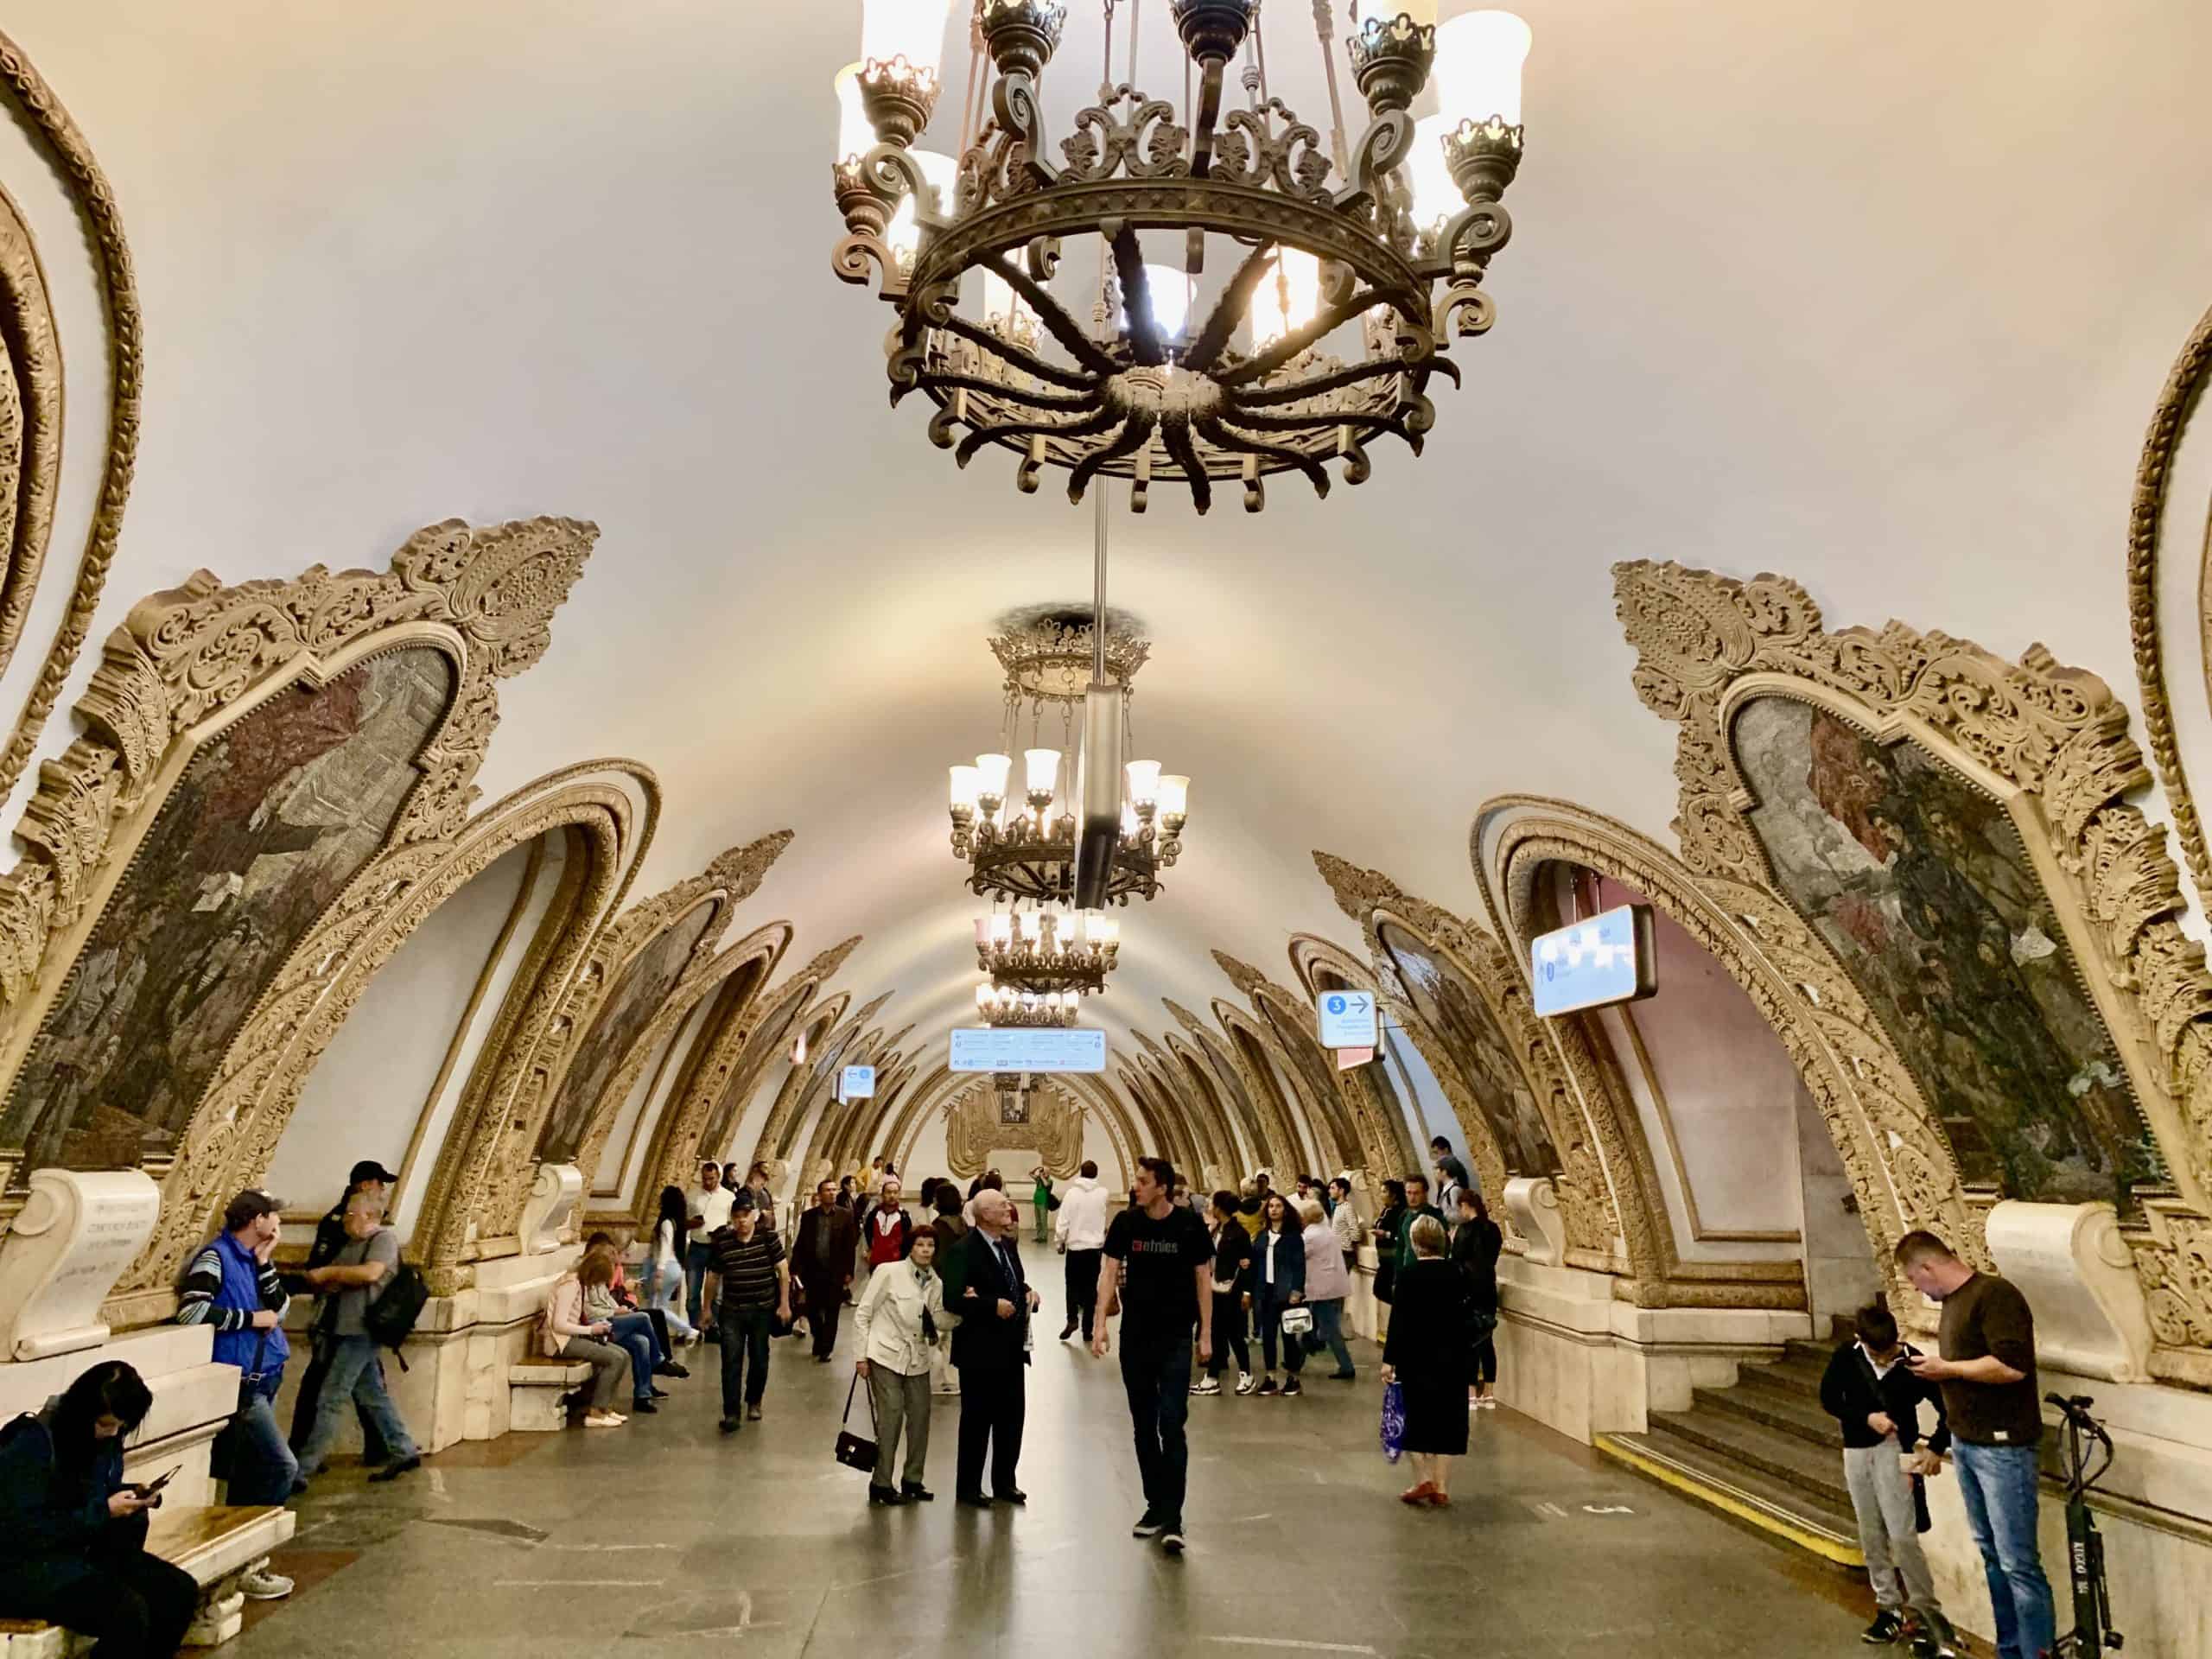 Kiyevskaya Station in Moscow